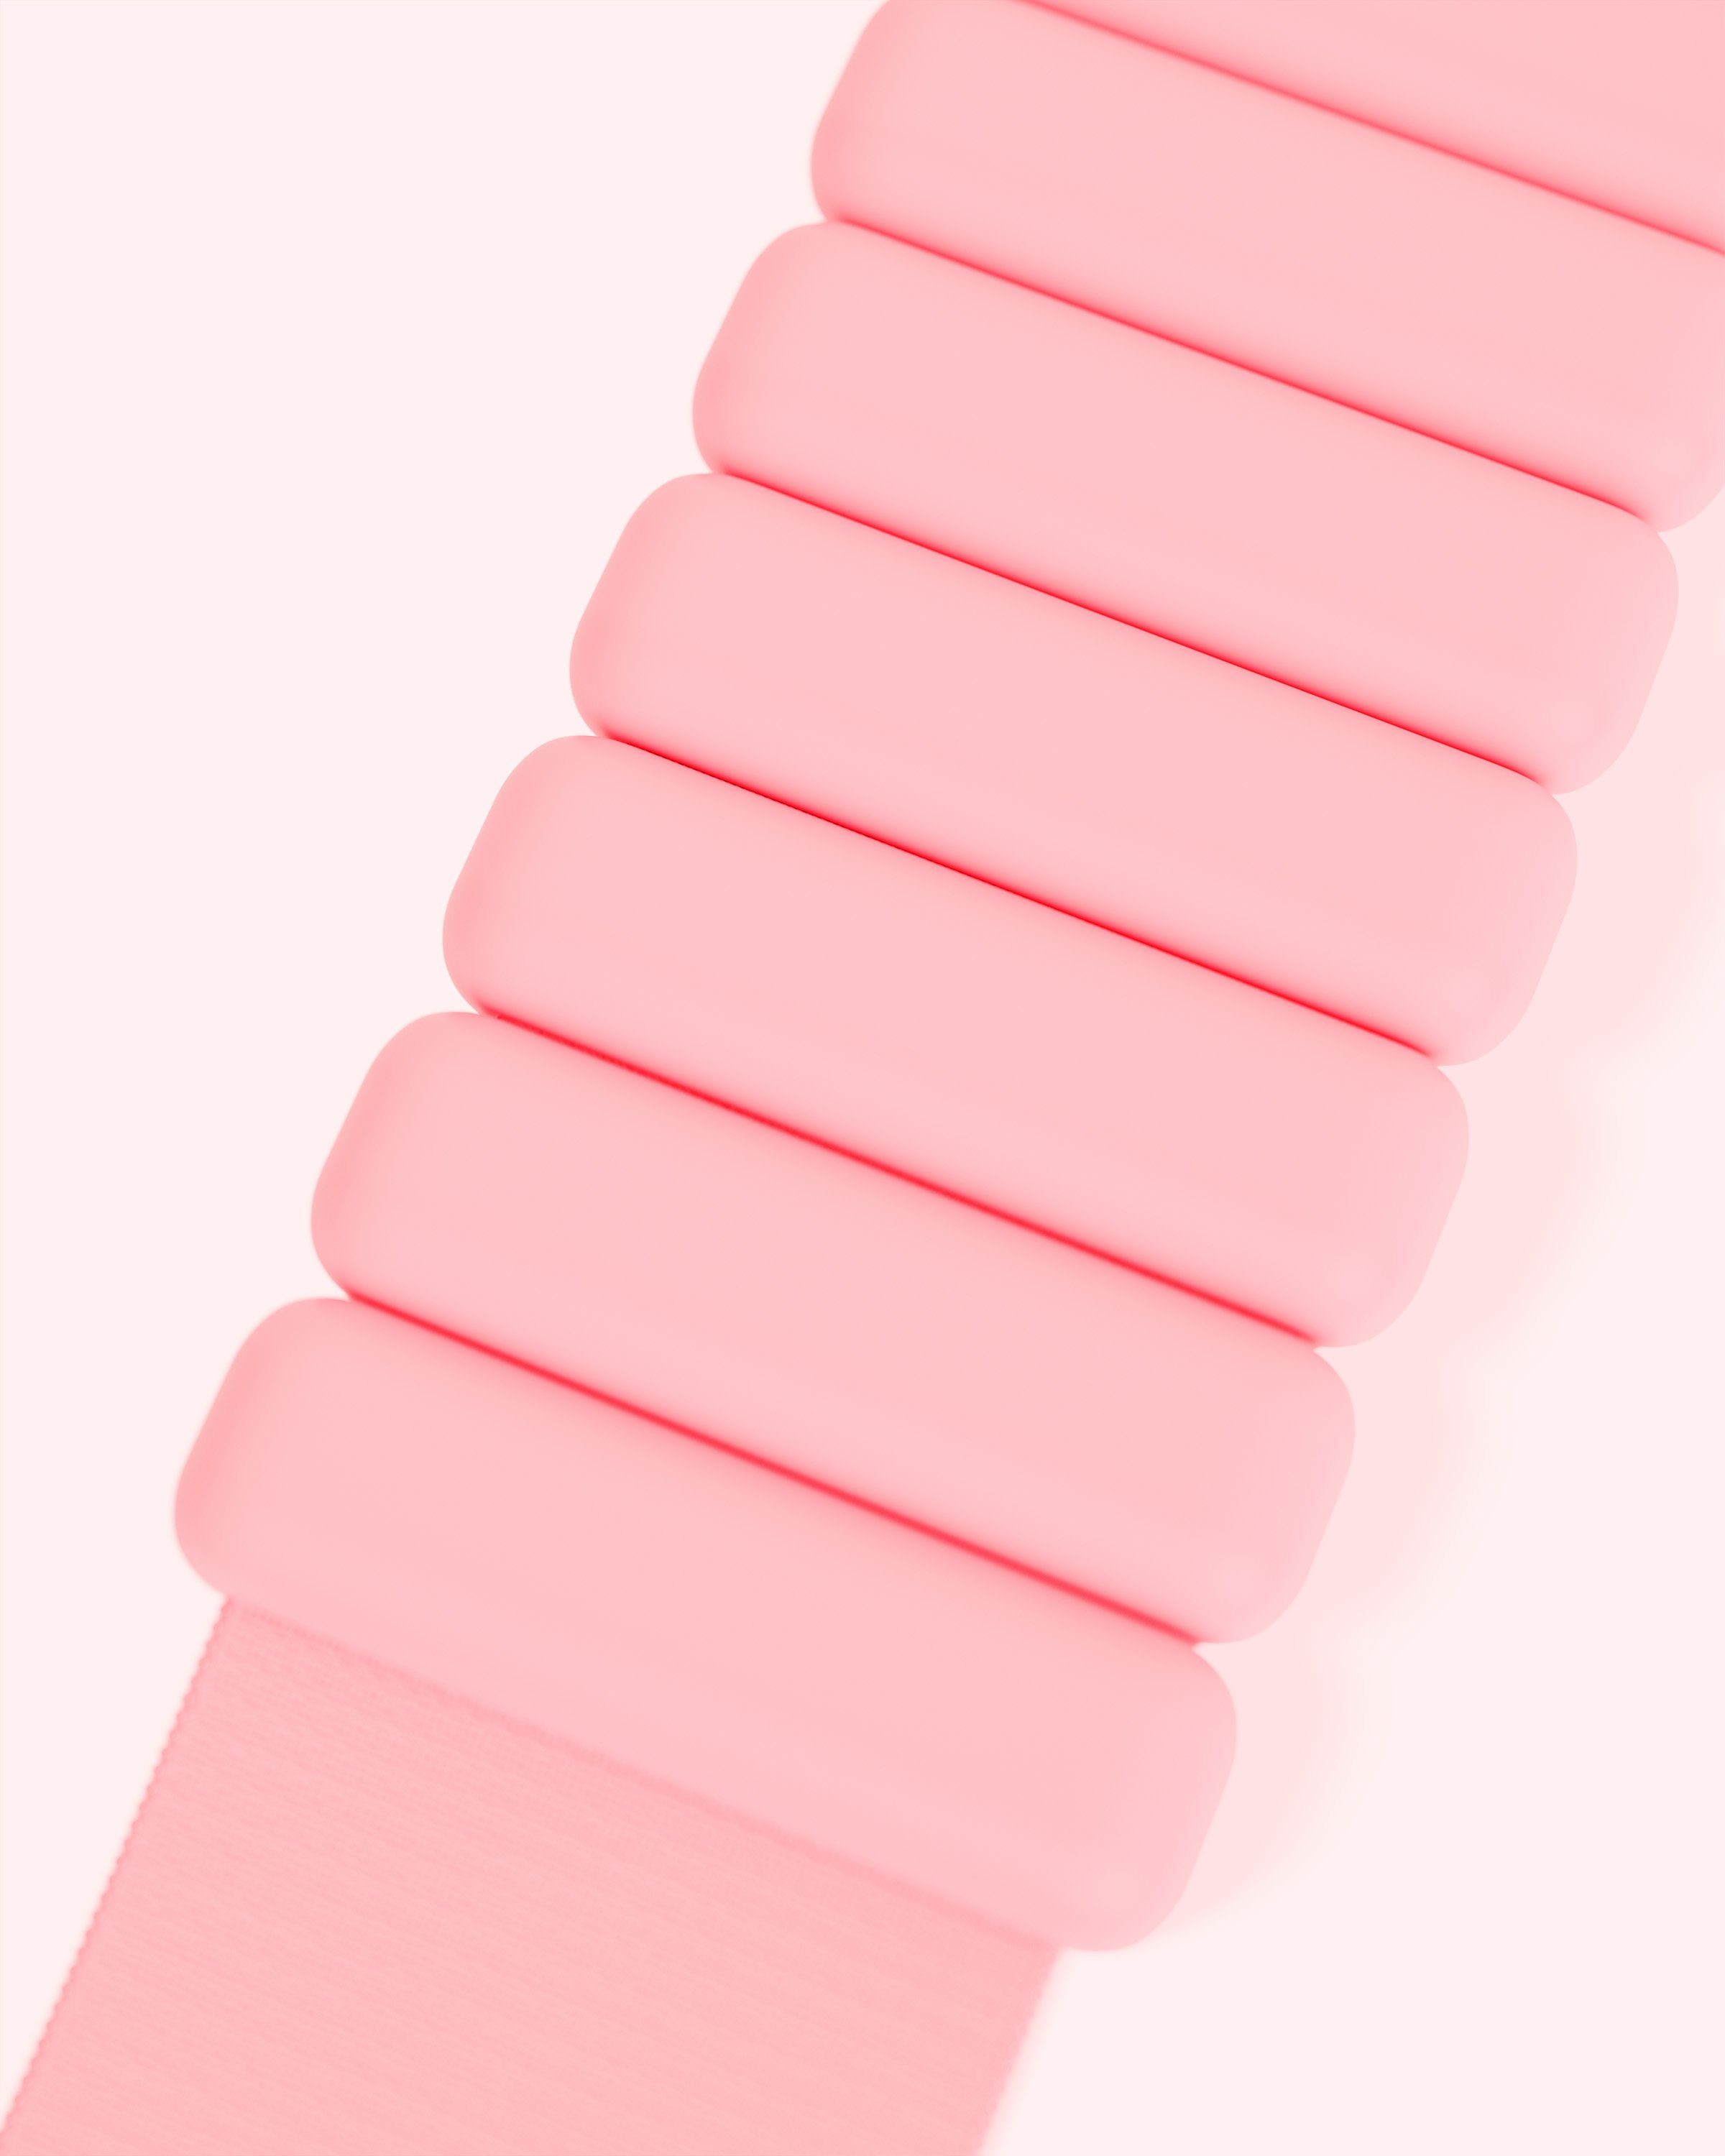 Stück), Bala blush (rosa) Bangles gleichmäßige Gewichtsverteilung starker BALA Klettverschluss, Gewichsmanschetten, Gewichtsmanschette - (2